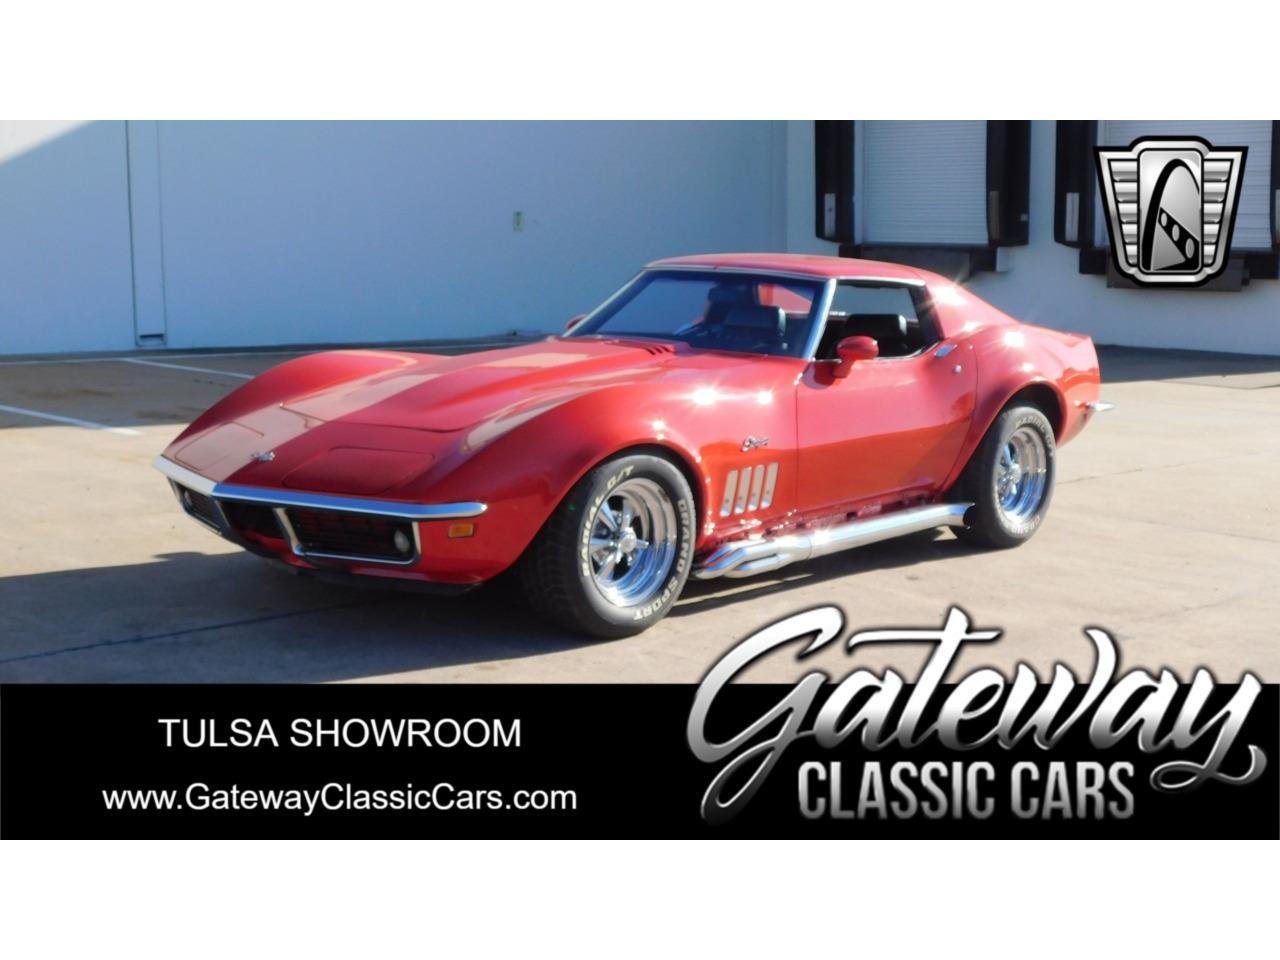 For Sale: 1969 Chevrolet Corvette in O'Fallon, Illinois for sale in O Fallon, IL